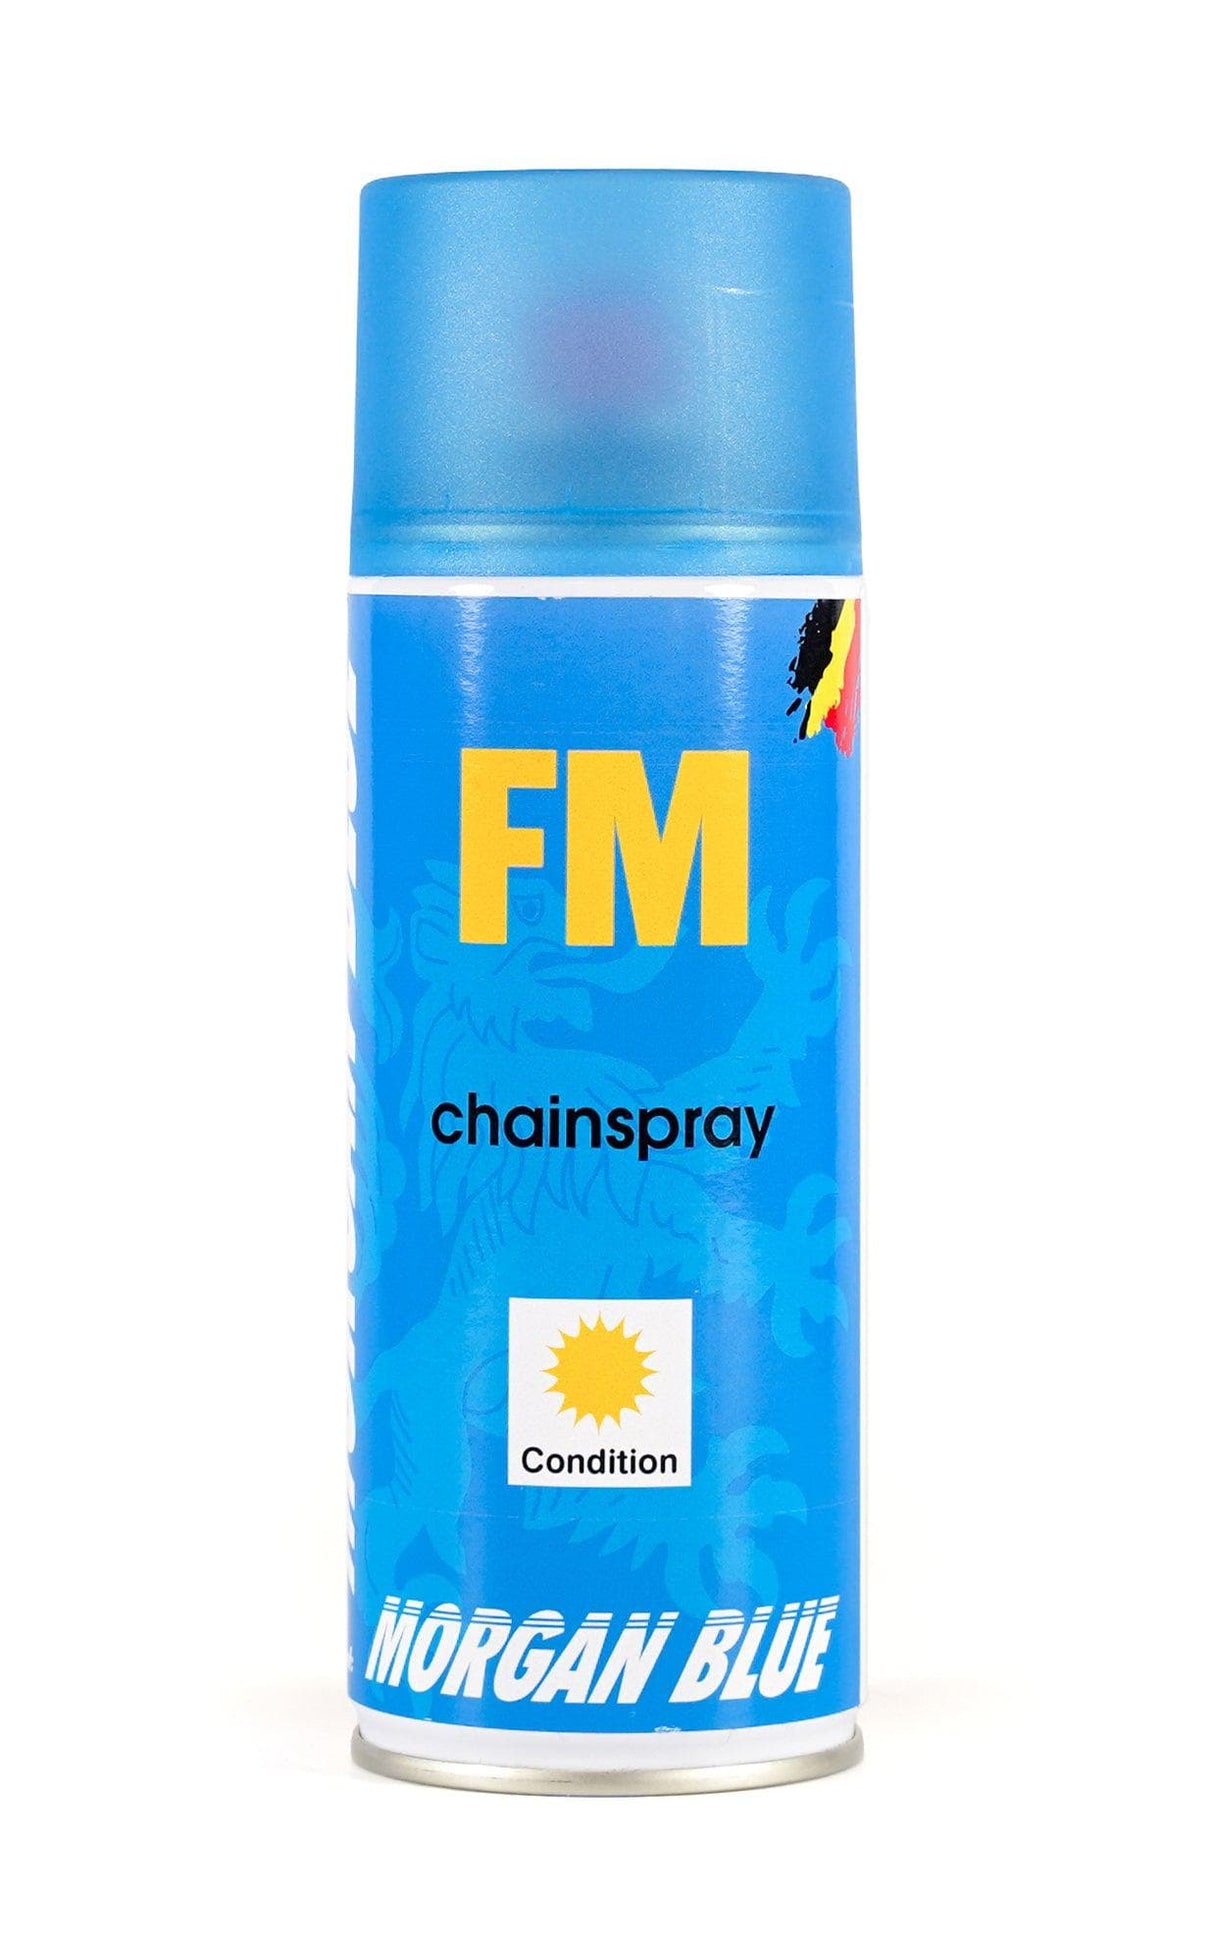 Morgan Blue FM Chainspray (400cc, Aerosol)